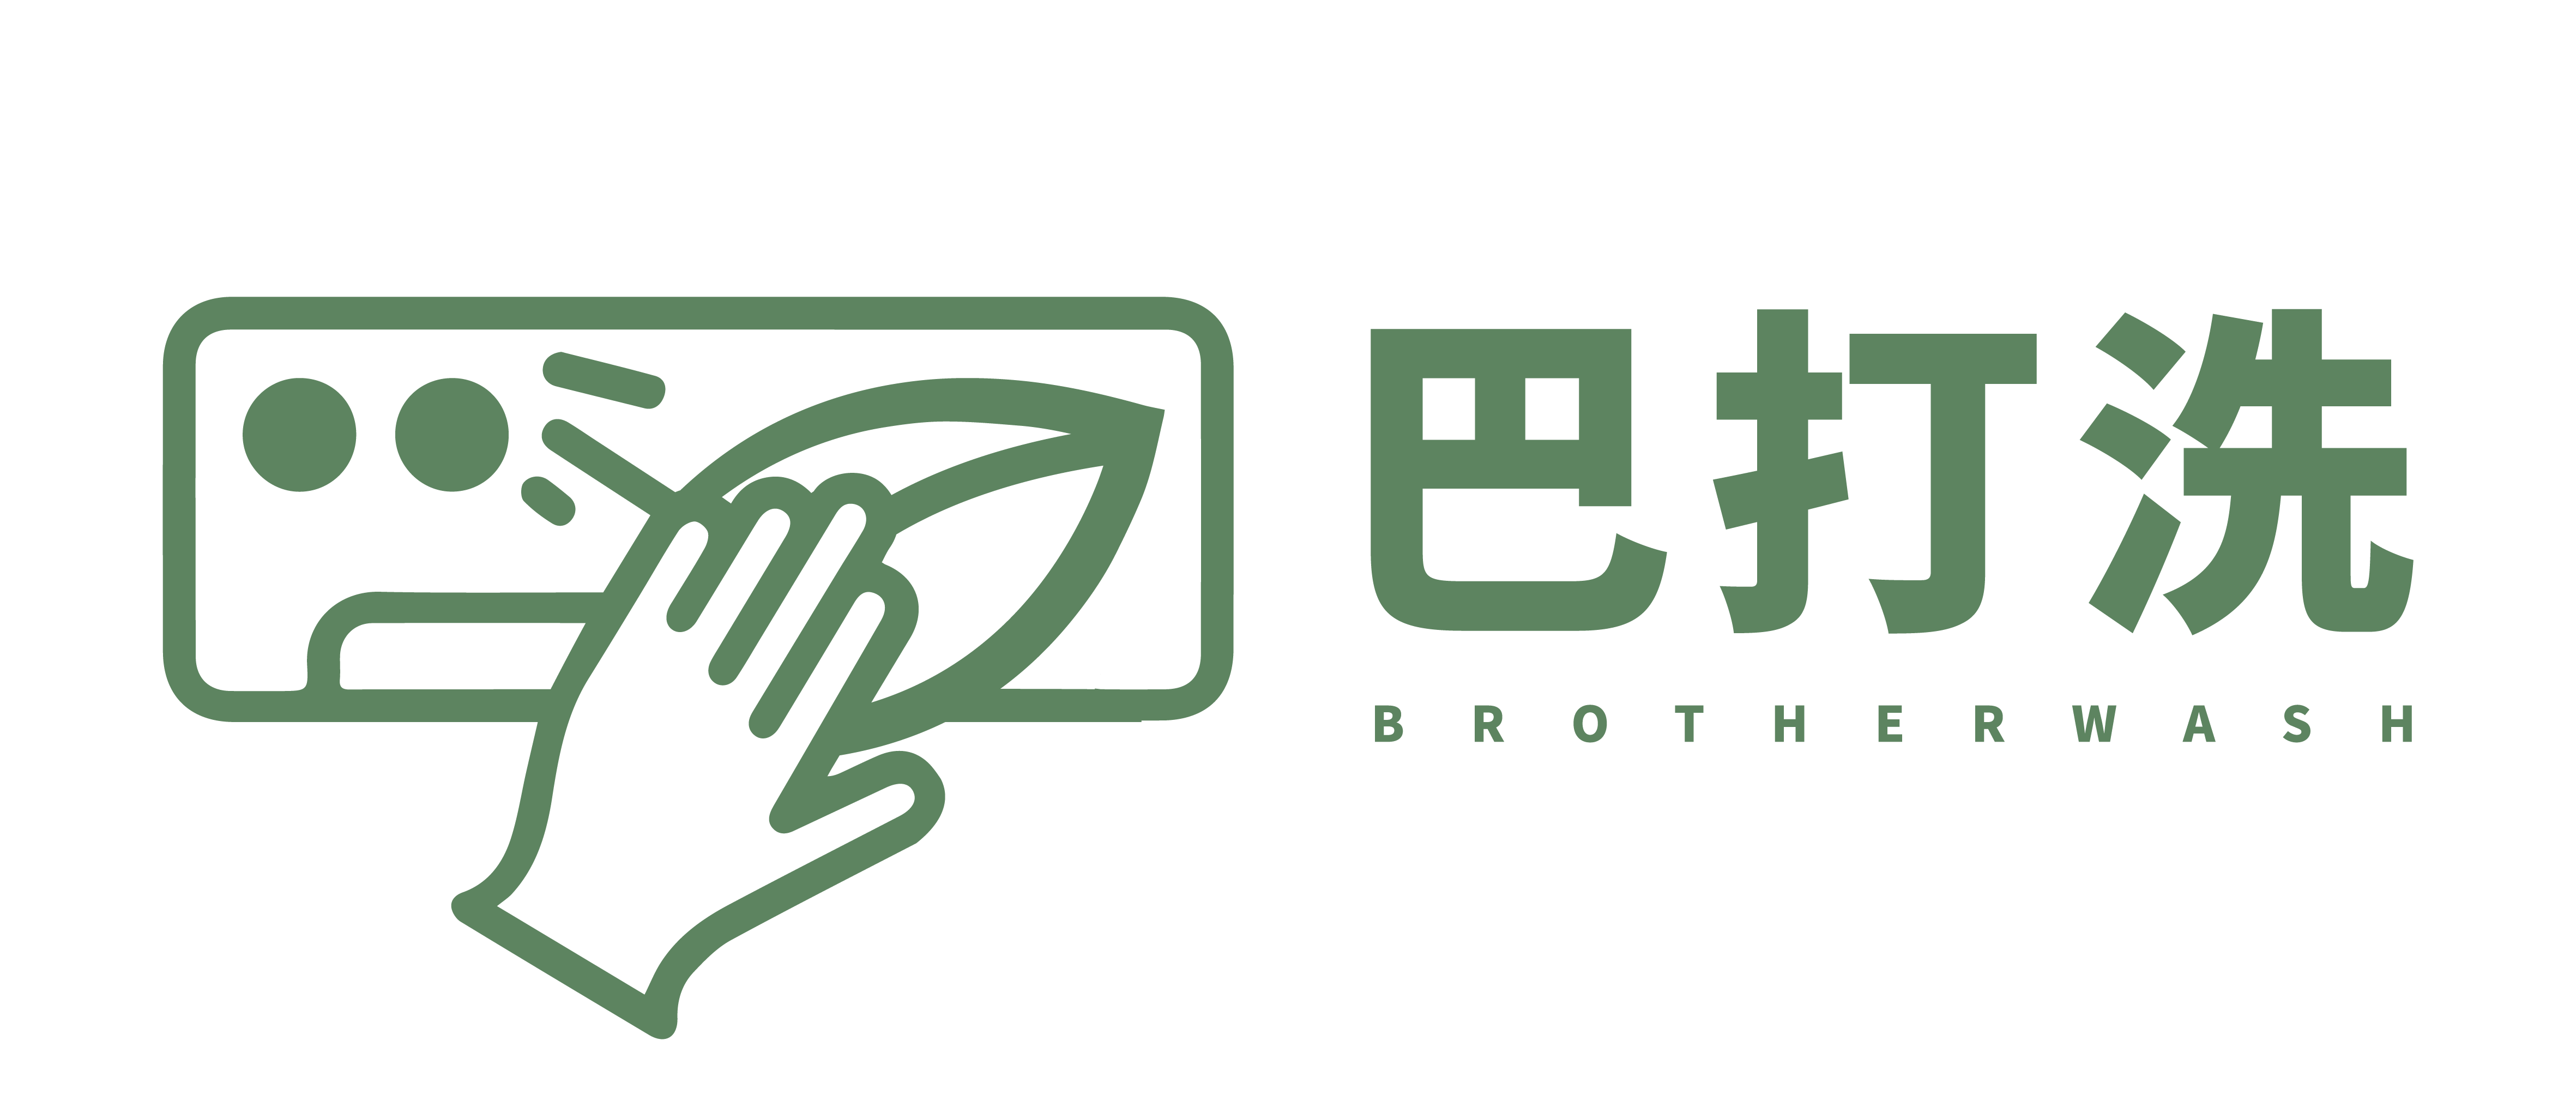 BrotherWash_logo